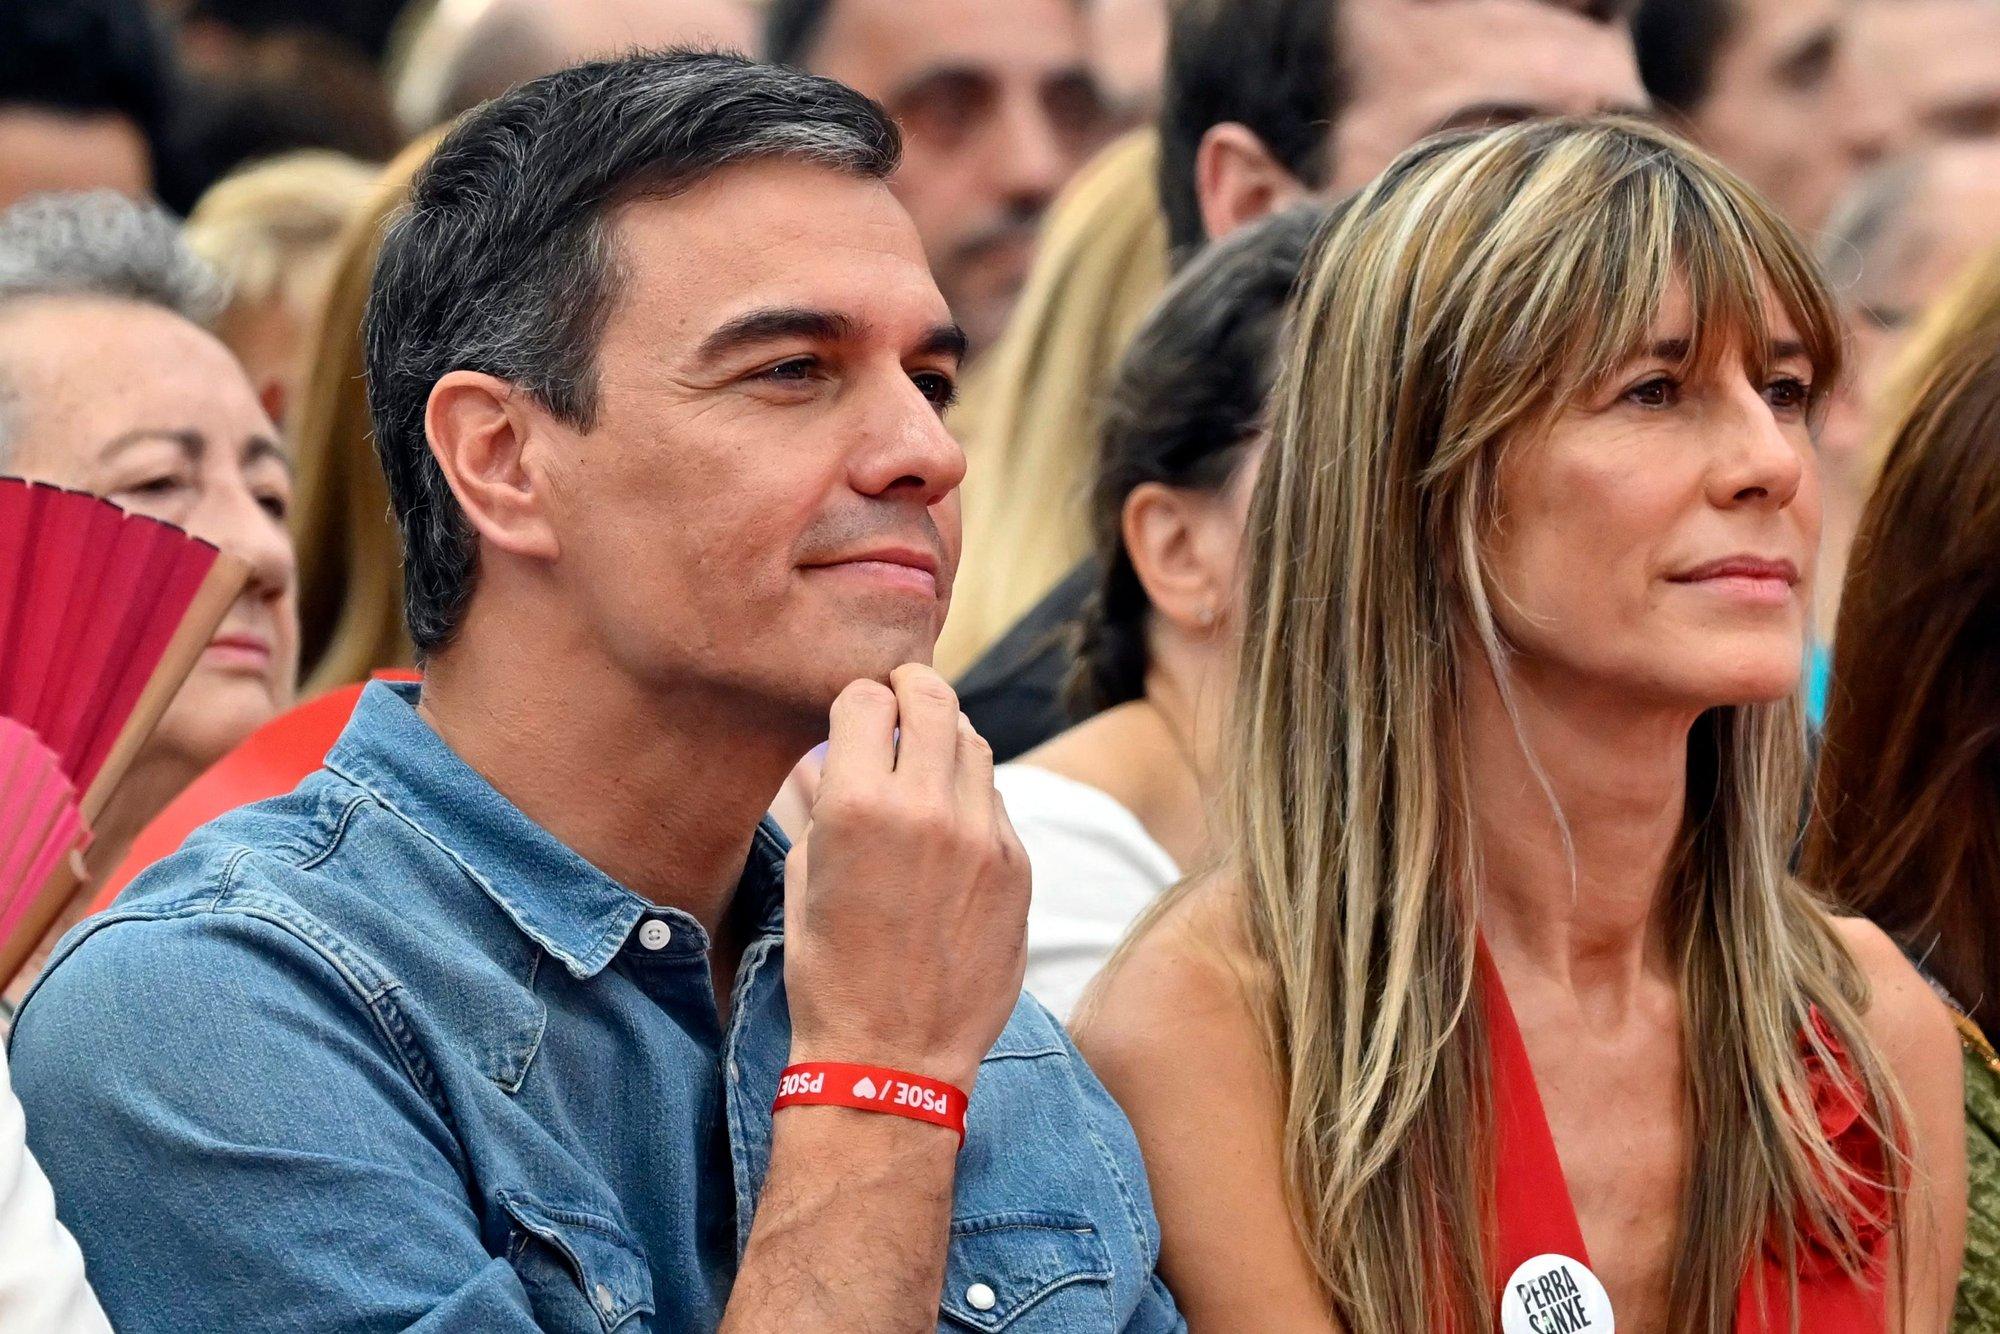 Ispanijos teisme – tyrimas dėl įtarimų korupcija premjero Sanchezo žmonai